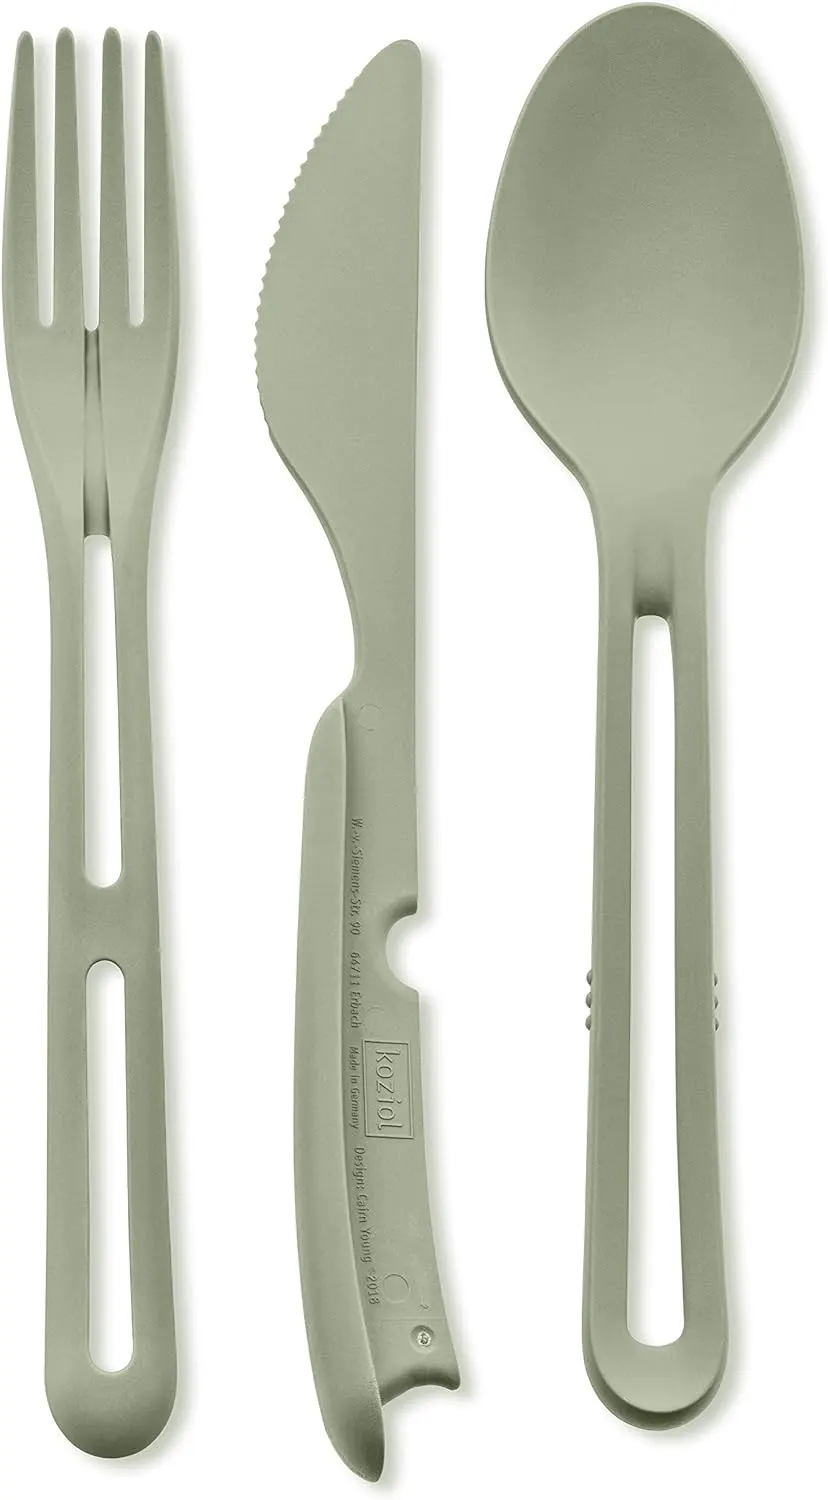 مجموعة أدوات مائدة 3*1 محمولة قابلة لإعادة الاستخدام،بلاستيك،أخضر